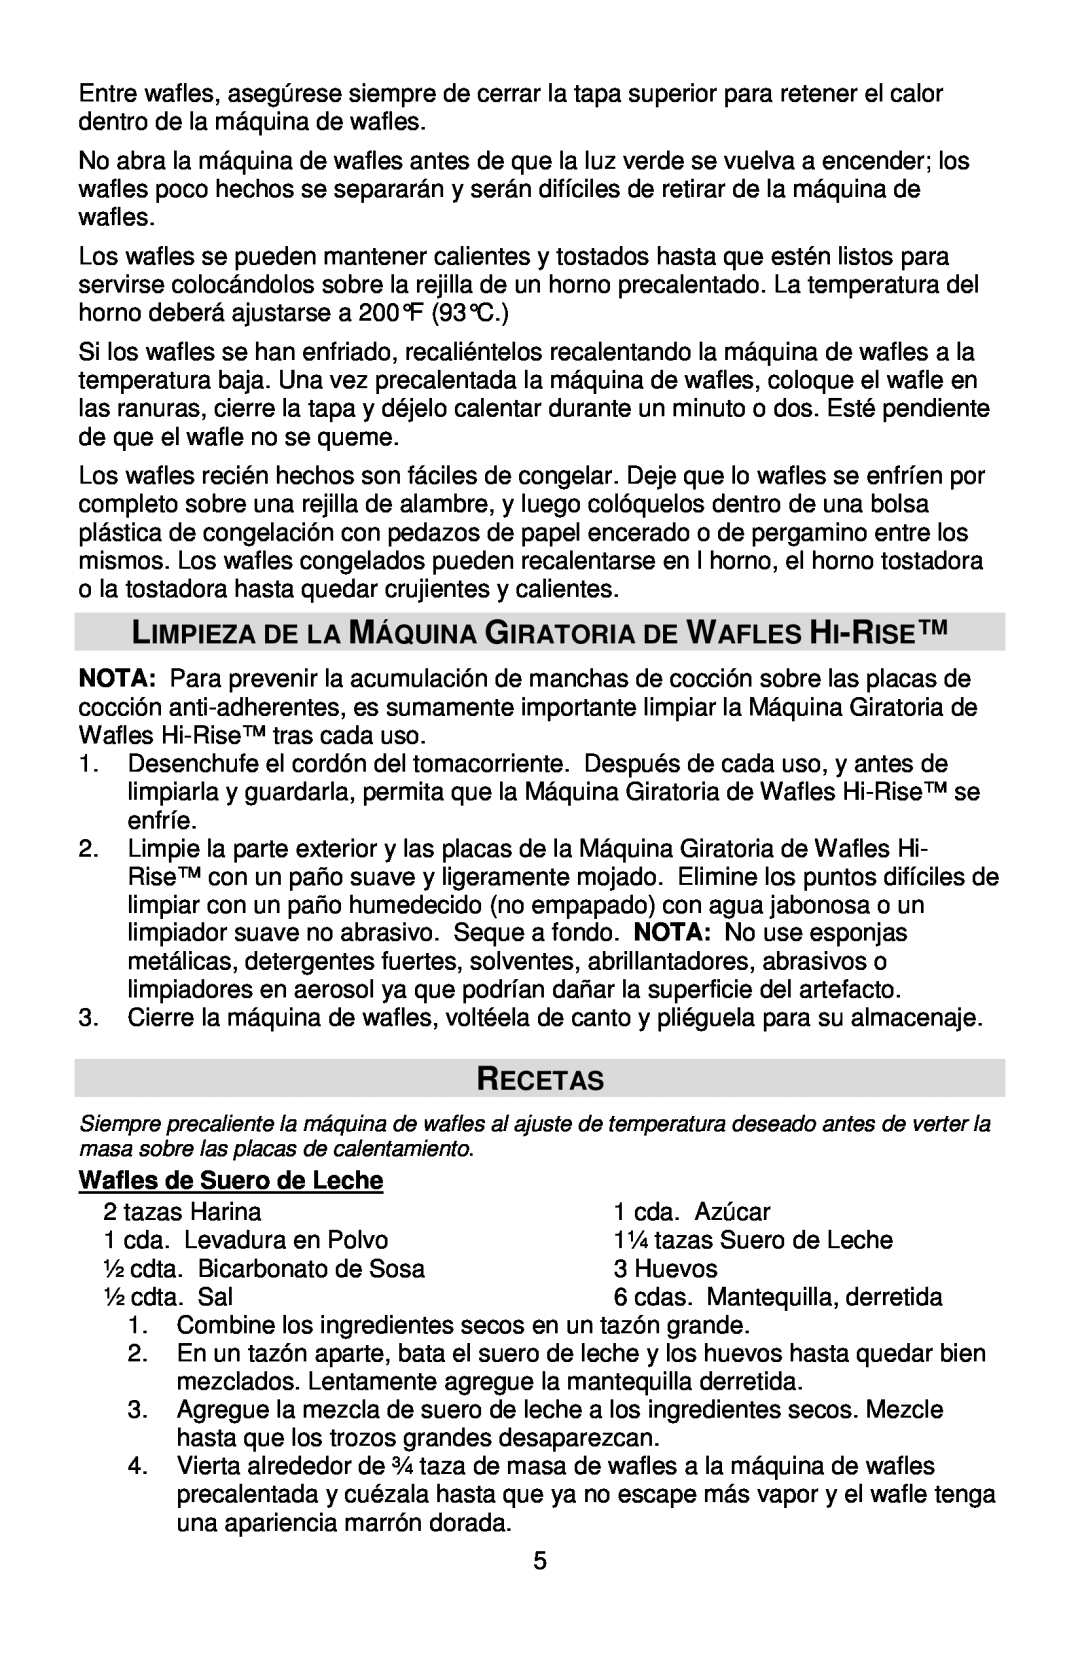 West Bend 6200, L5790A instruction manual Recetas, Wafles de Suero de Leche 